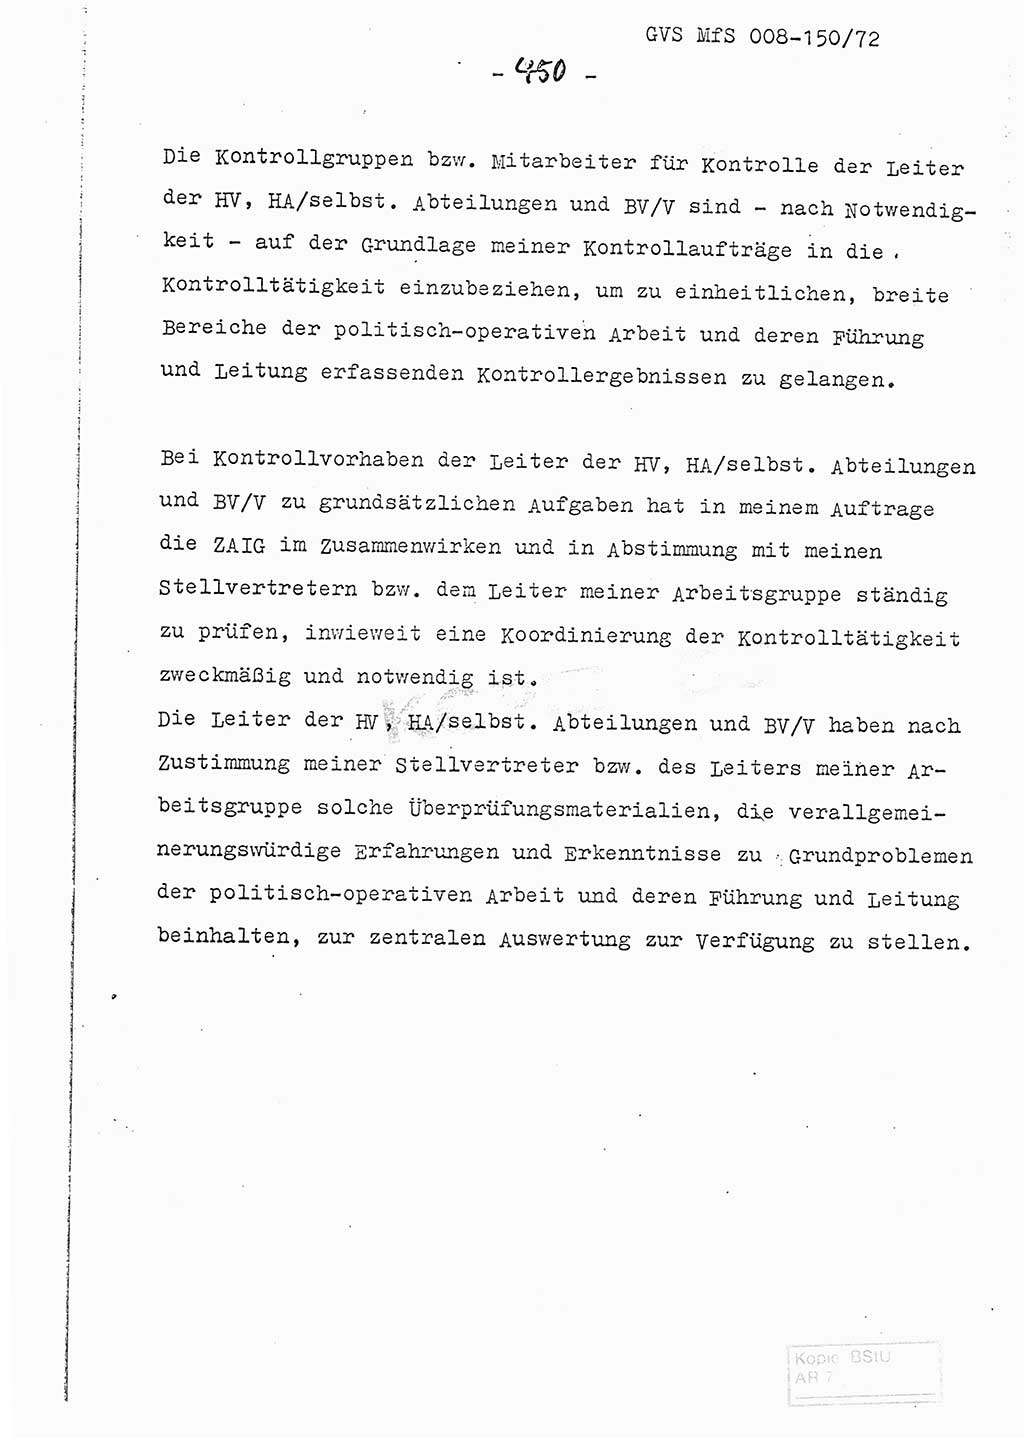 Referat (Entwurf) des Genossen Minister (Generaloberst Erich Mielke) auf der Dienstkonferenz 1972, Ministerium für Staatssicherheit (MfS) [Deutsche Demokratische Republik (DDR)], Der Minister, Geheime Verschlußsache (GVS) 008-150/72, Berlin 25.2.1972, Seite 450 (Ref. Entw. DK MfS DDR Min. GVS 008-150/72 1972, S. 450)